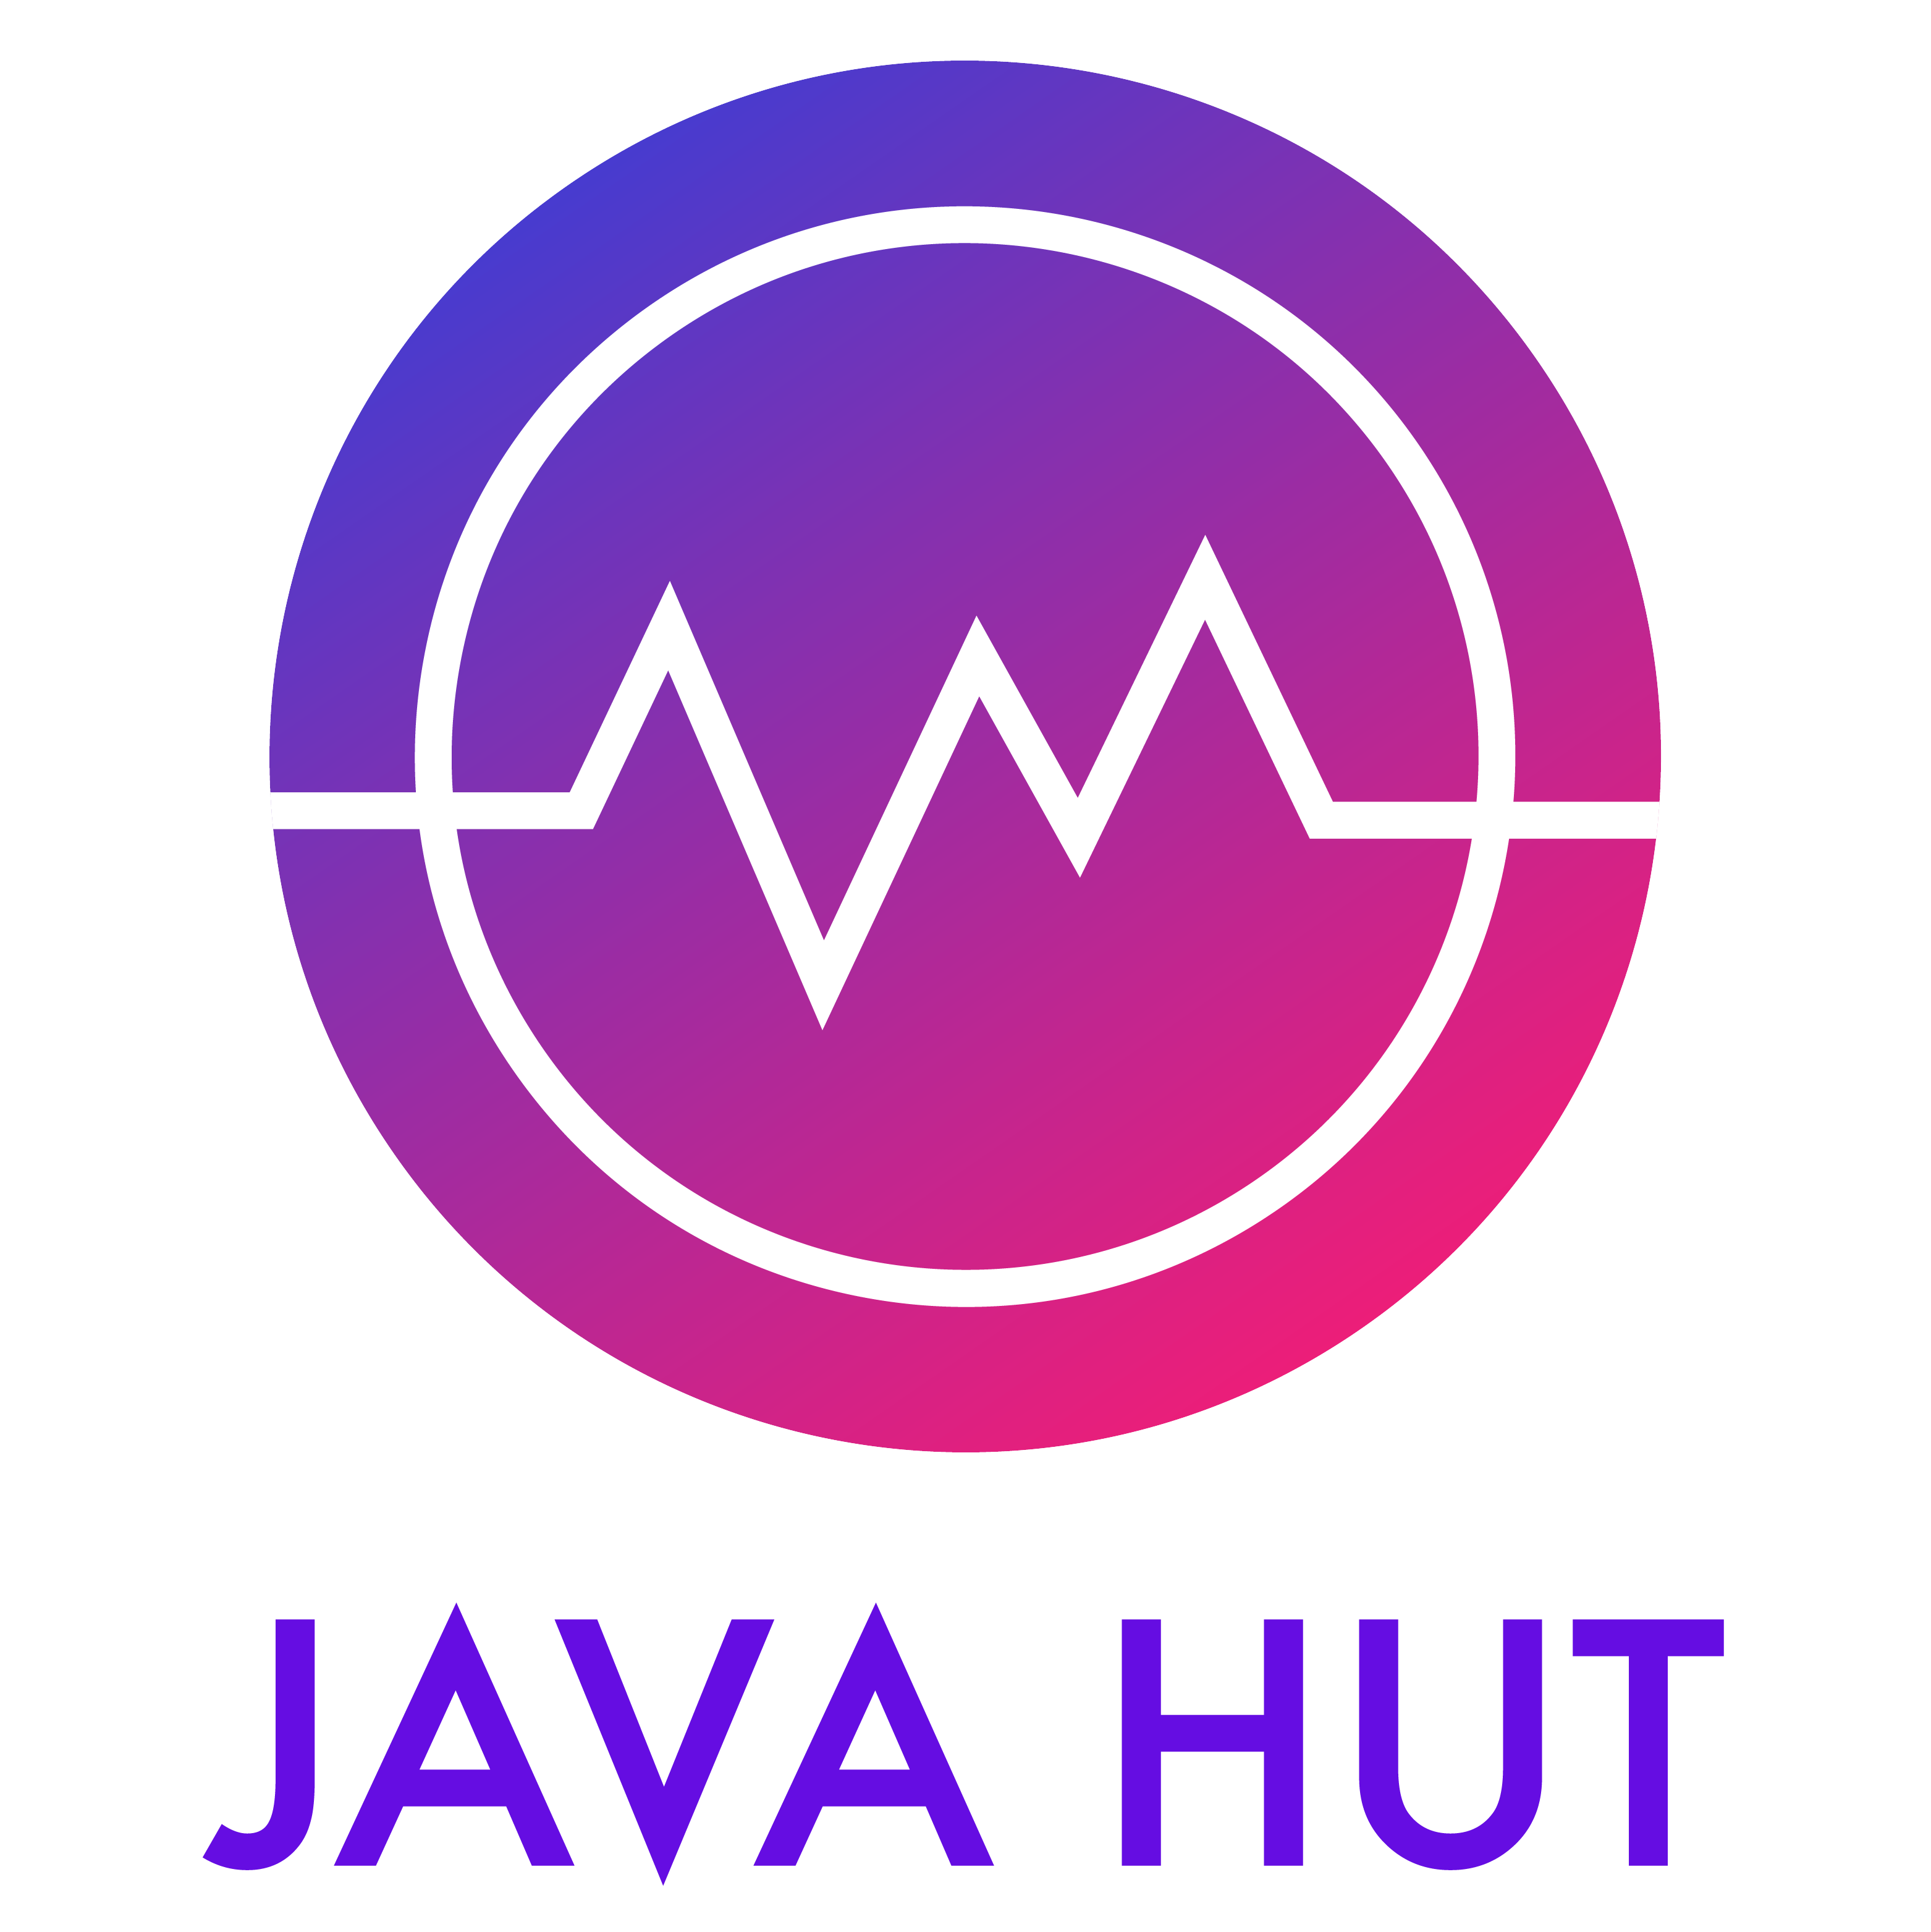 Логотип JavaHut